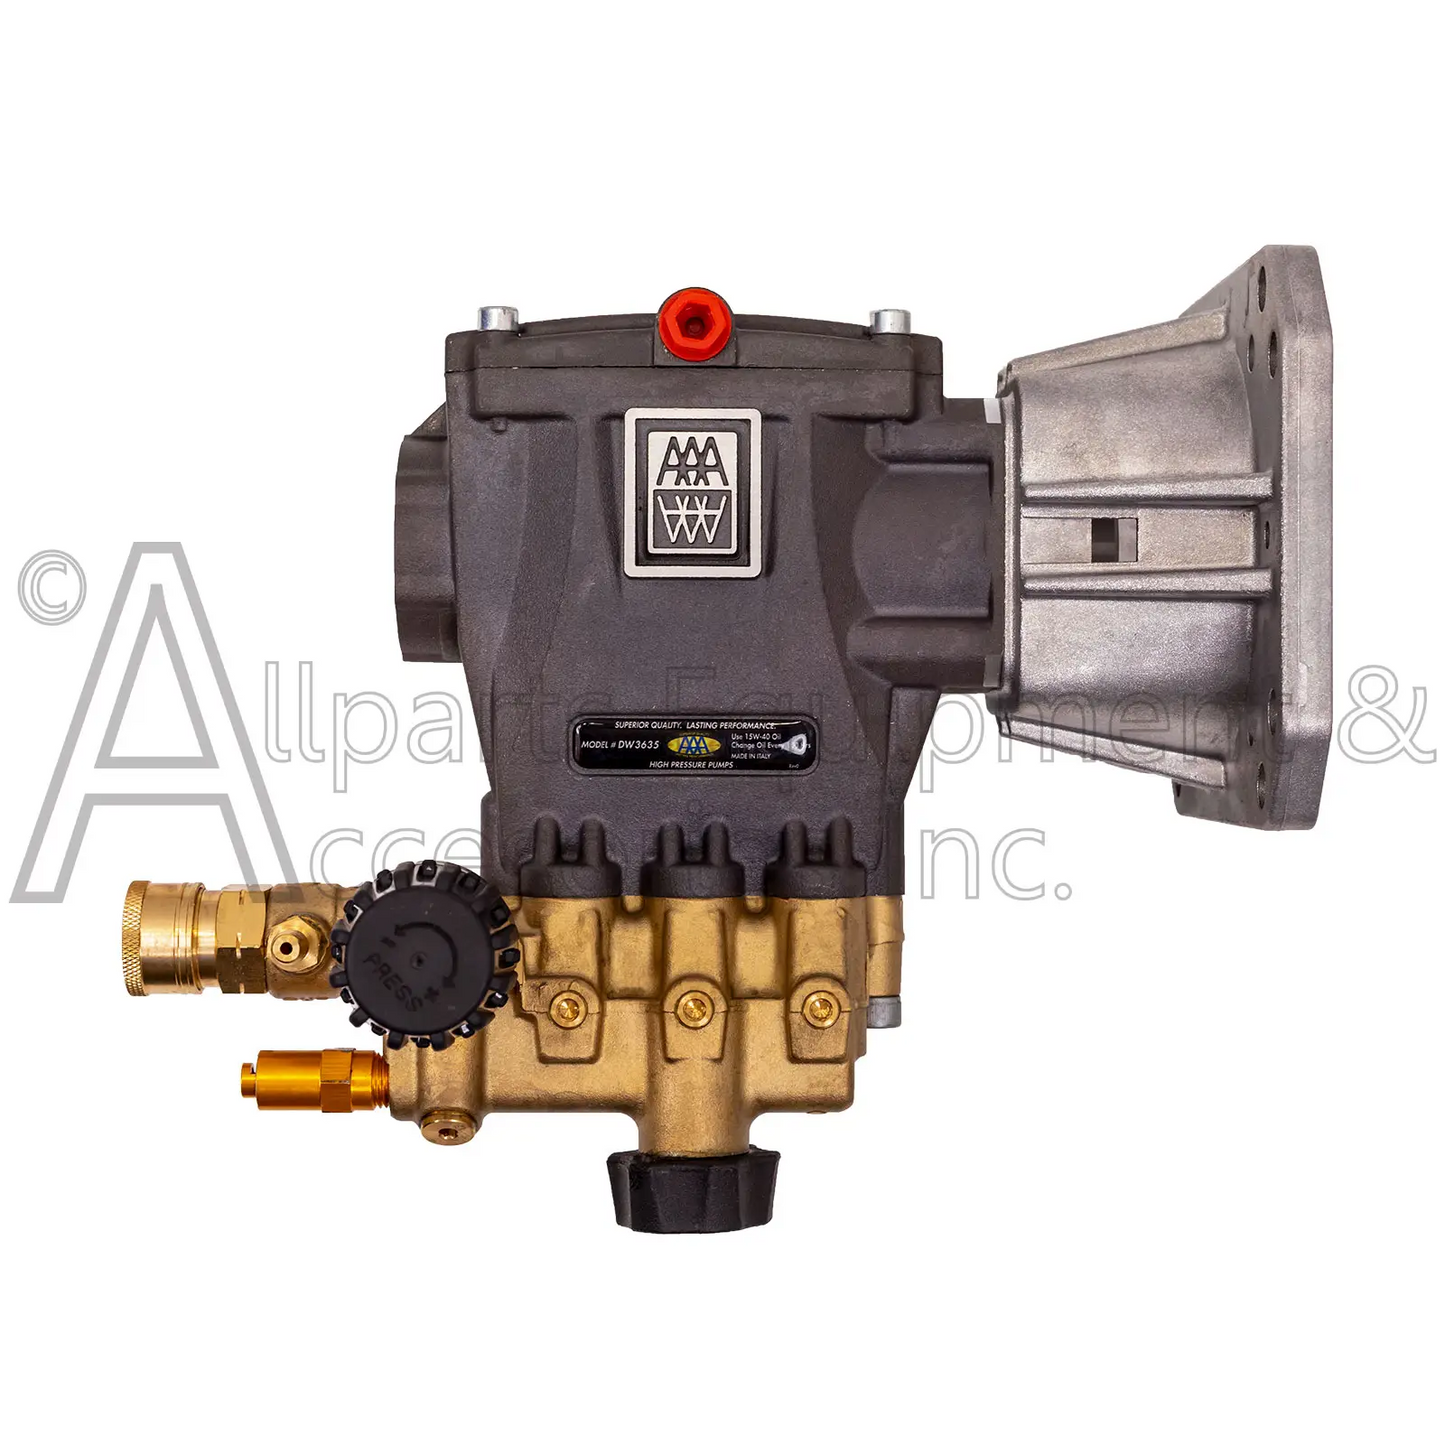 DW3635 Horizontal Triplex Pump 3600 Psi 3.5 Gpm By Aaa